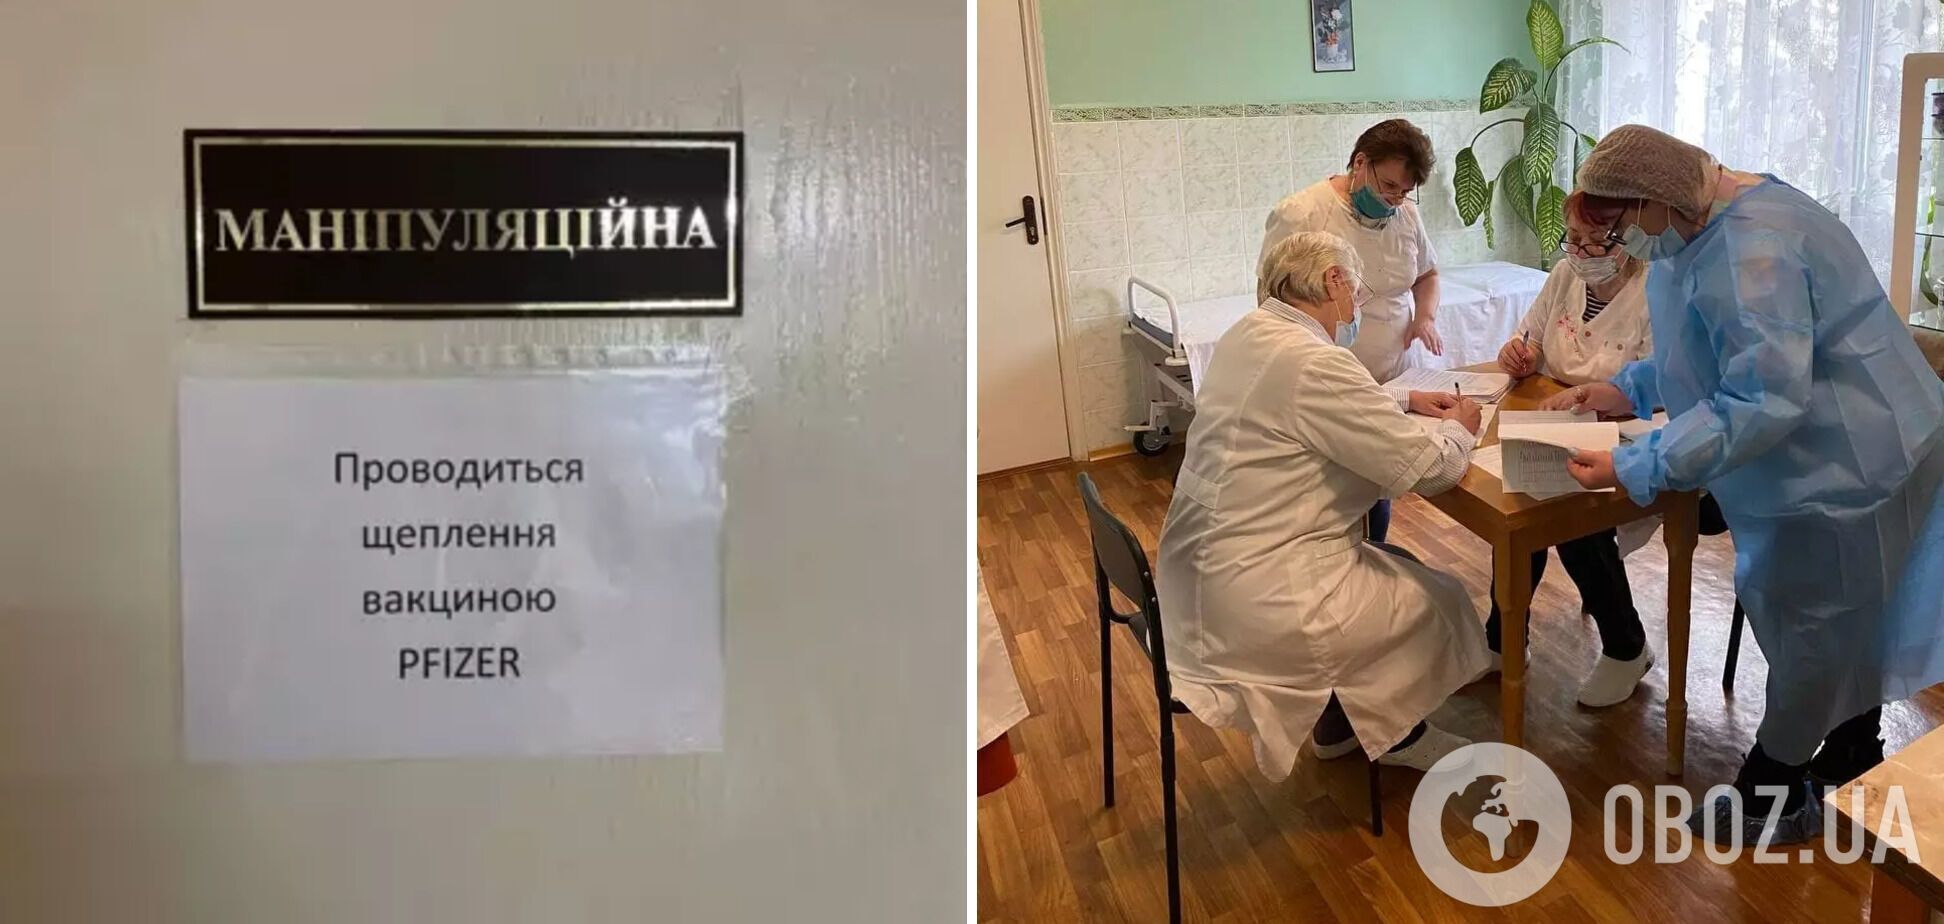 Прививки вакциной Pfizer начали делать в доме-интернате в Бородянке